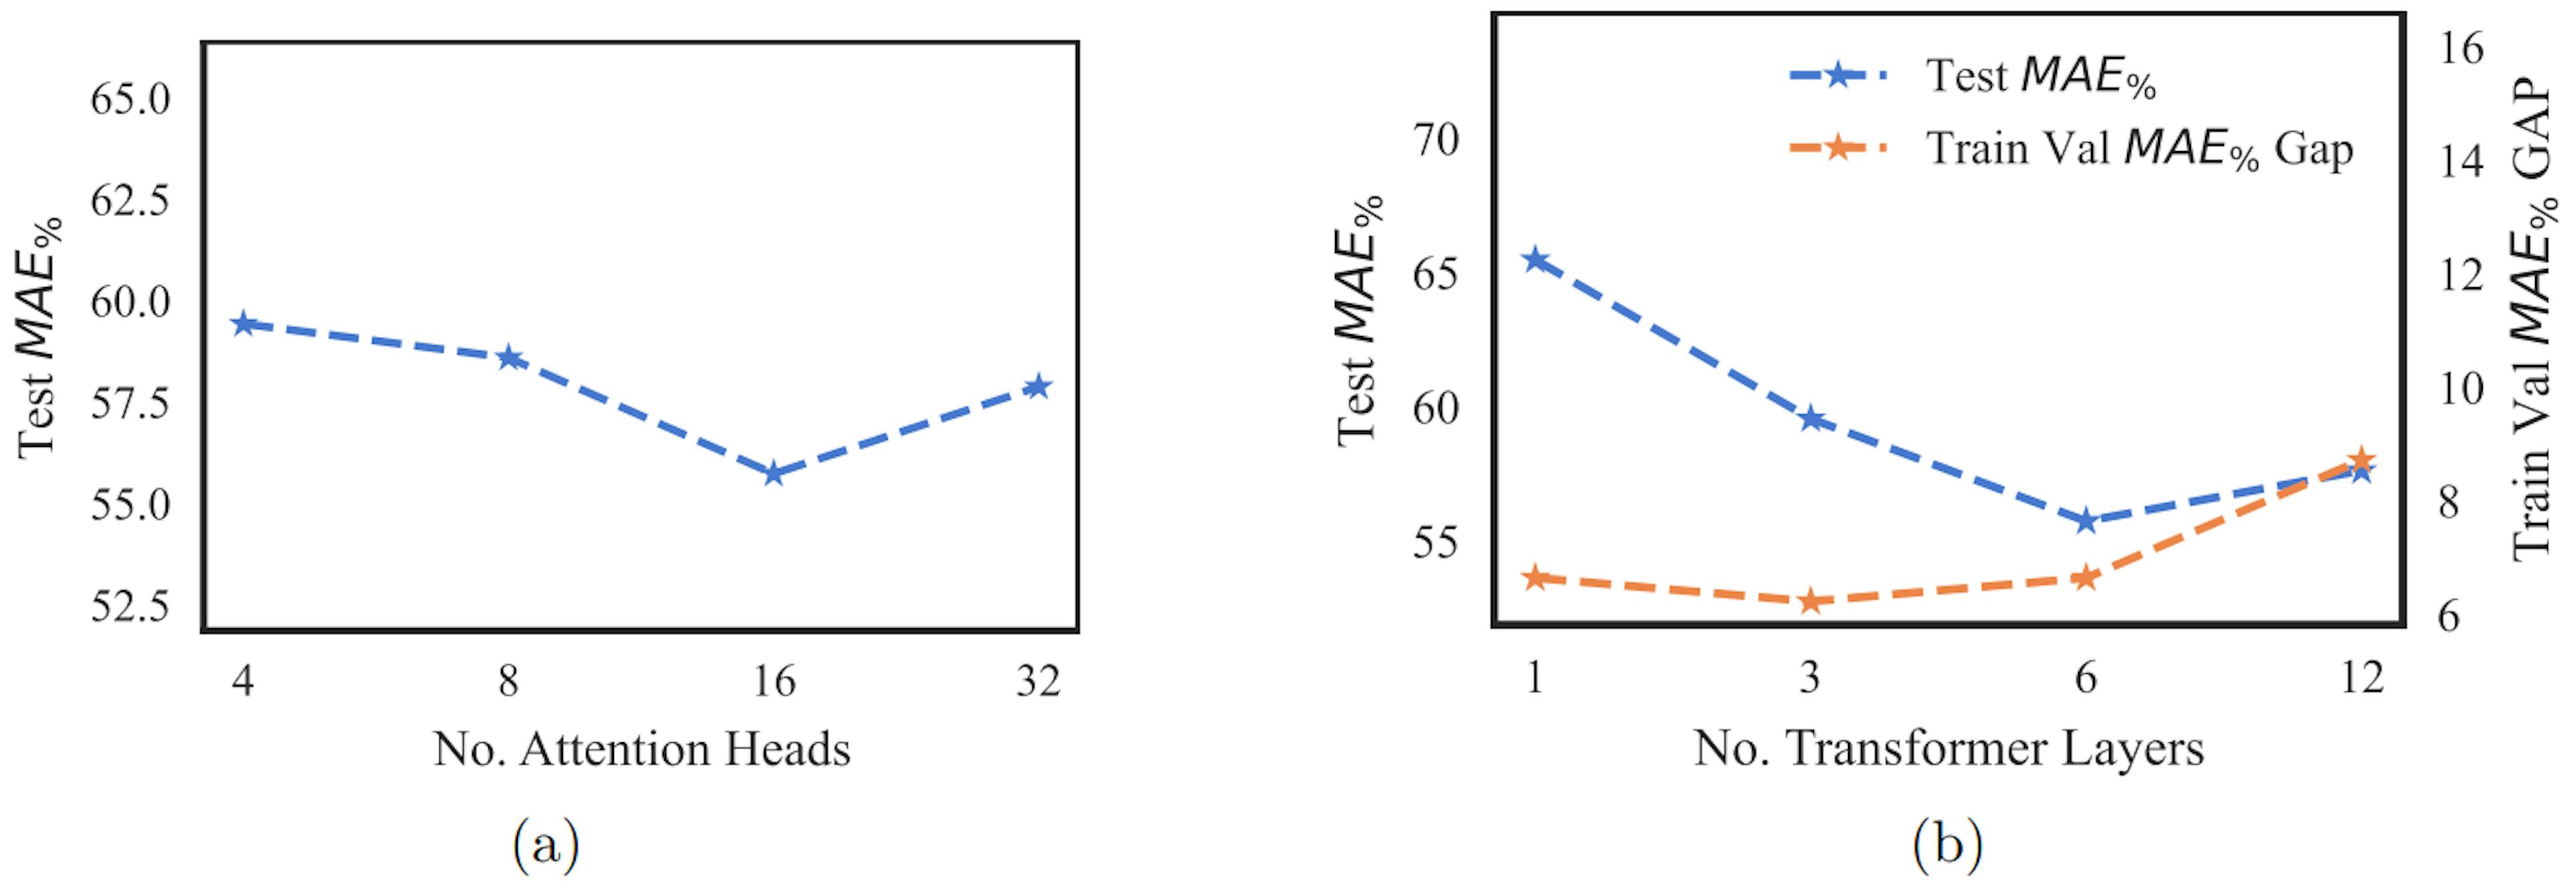 Abbildung 2: Abbildung a stellt den MAE%-Testwert gegenüber der Anzahl der Aufmerksamkeitsköpfe dar. Abbildung b stellt den MAE%-Testwert und die MAE%-Lücke zwischen Testwert und Train-Val gegenüber der Anzahl der Transformatorschichten dar. Der MAE%-Wert wird wie in Gleichung 4 dargestellt berechnet.